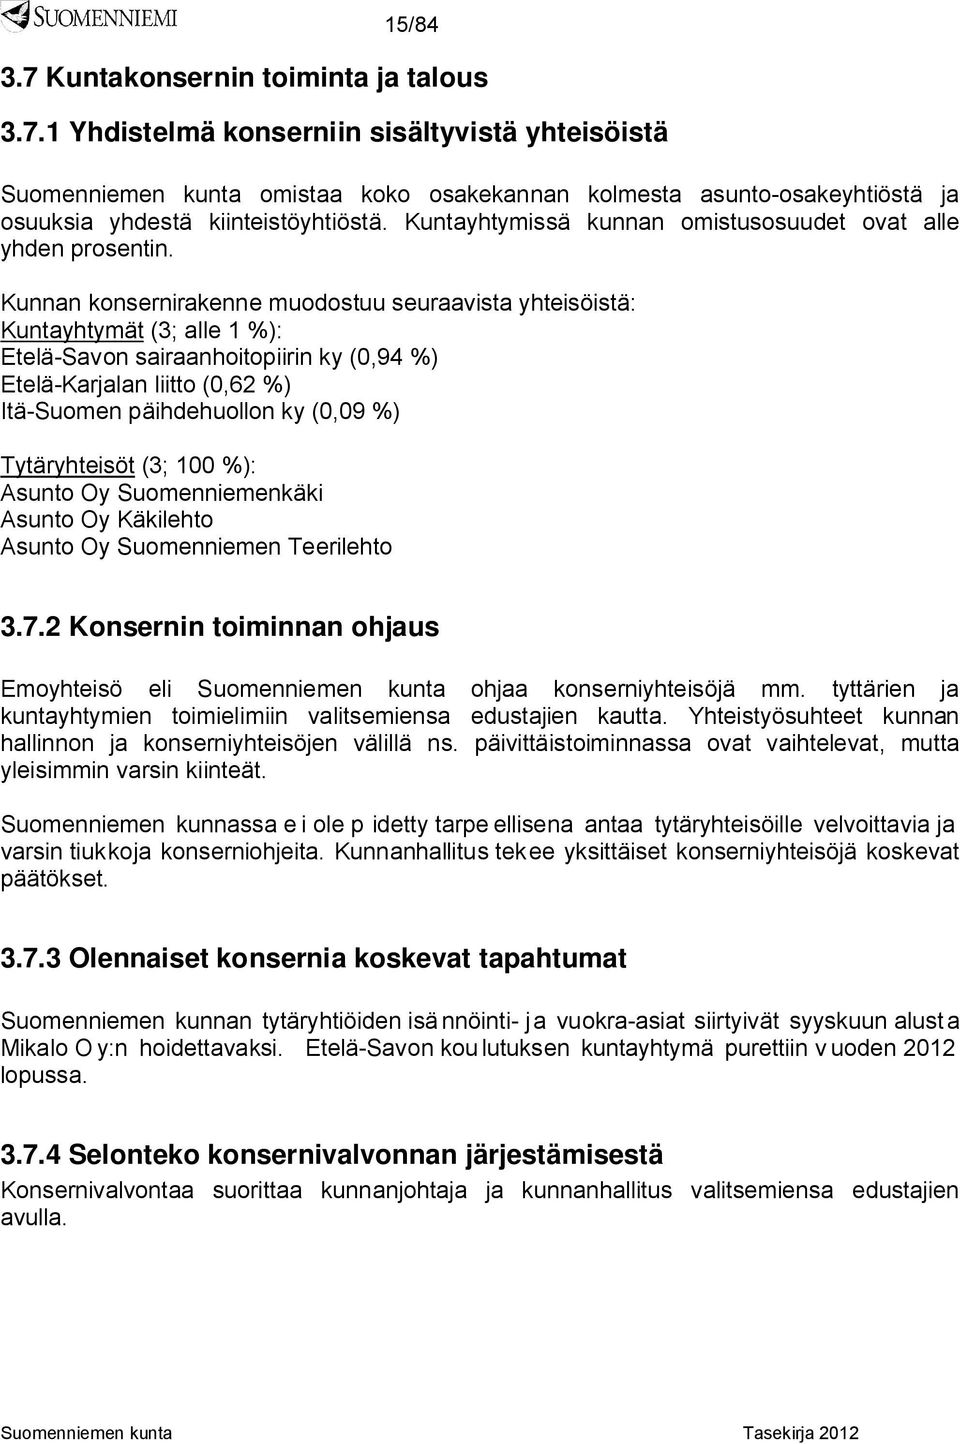 Kunnan konsernirakenne muodostuu seuraavista yhteisöistä: Kuntayhtymät (3; alle 1 %): Etelä-Savon sairaanhoitopiirin ky (0,94 %) Etelä-Karjalan liitto (0,62 %) Itä-Suomen päihdehuollon ky (0,09 %)